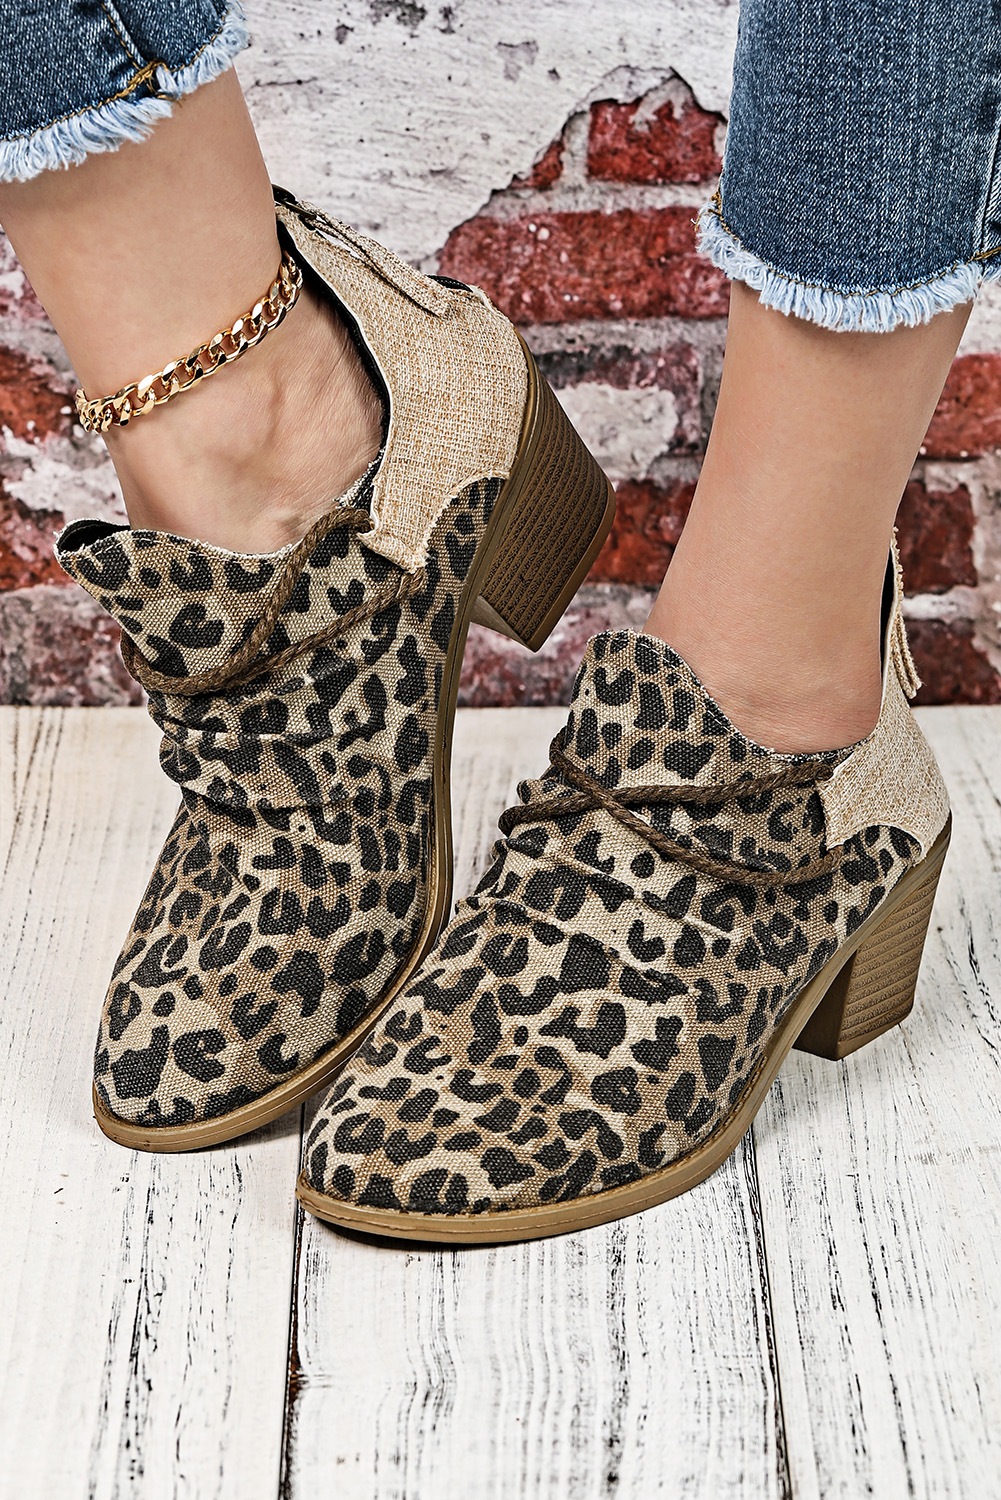 Wholesale Khaki Leopard Print Colorblock Ankle BOOTS 